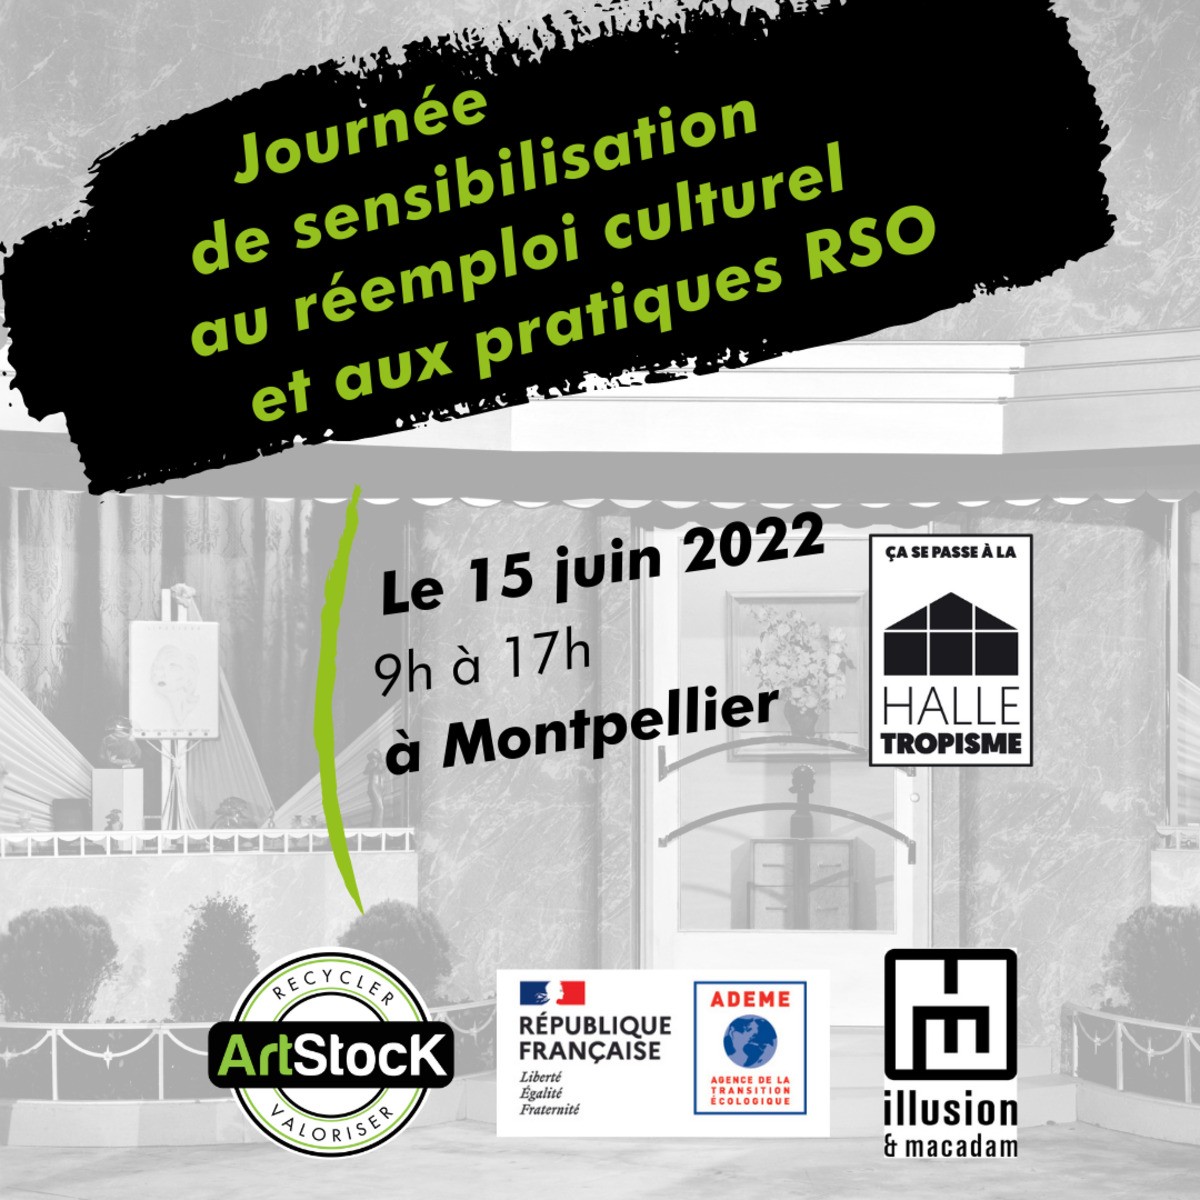 Journée de sensibilisation au réemploi culturel et pratiques RSO - 15 juin 2022 - Montpellier 